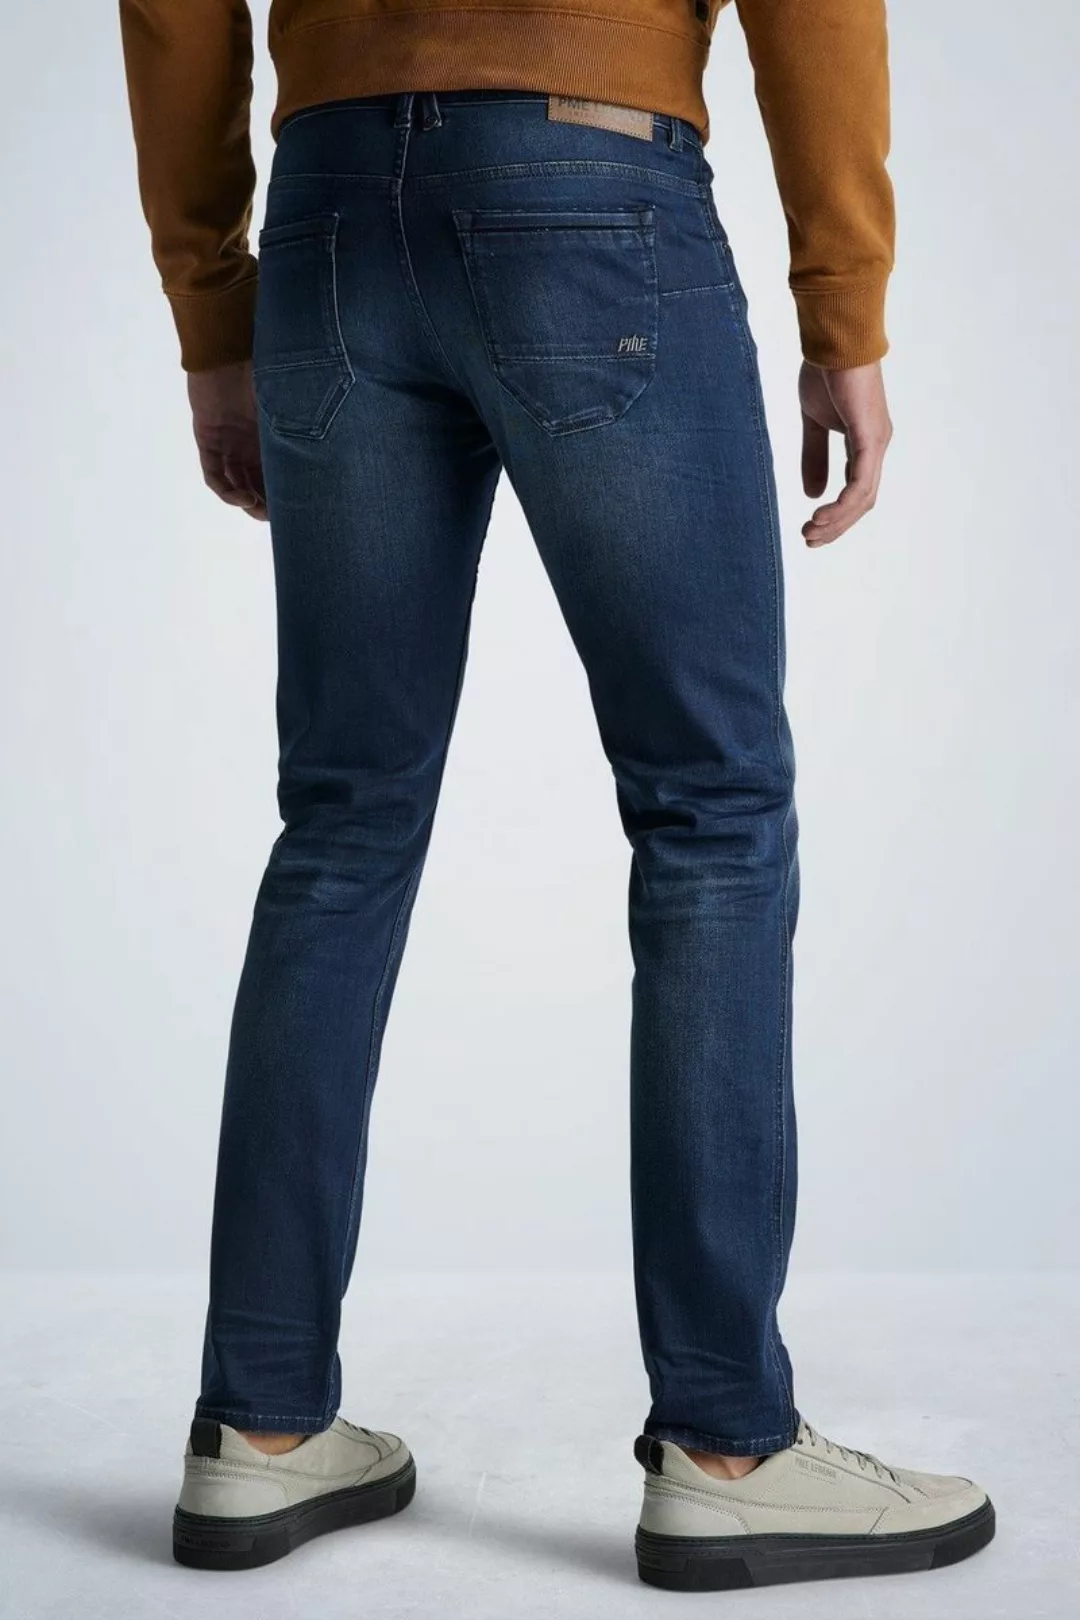 PME Legend Nightflight Jeans Dunkelblau NBW - Größe W 35 - L 32 günstig online kaufen